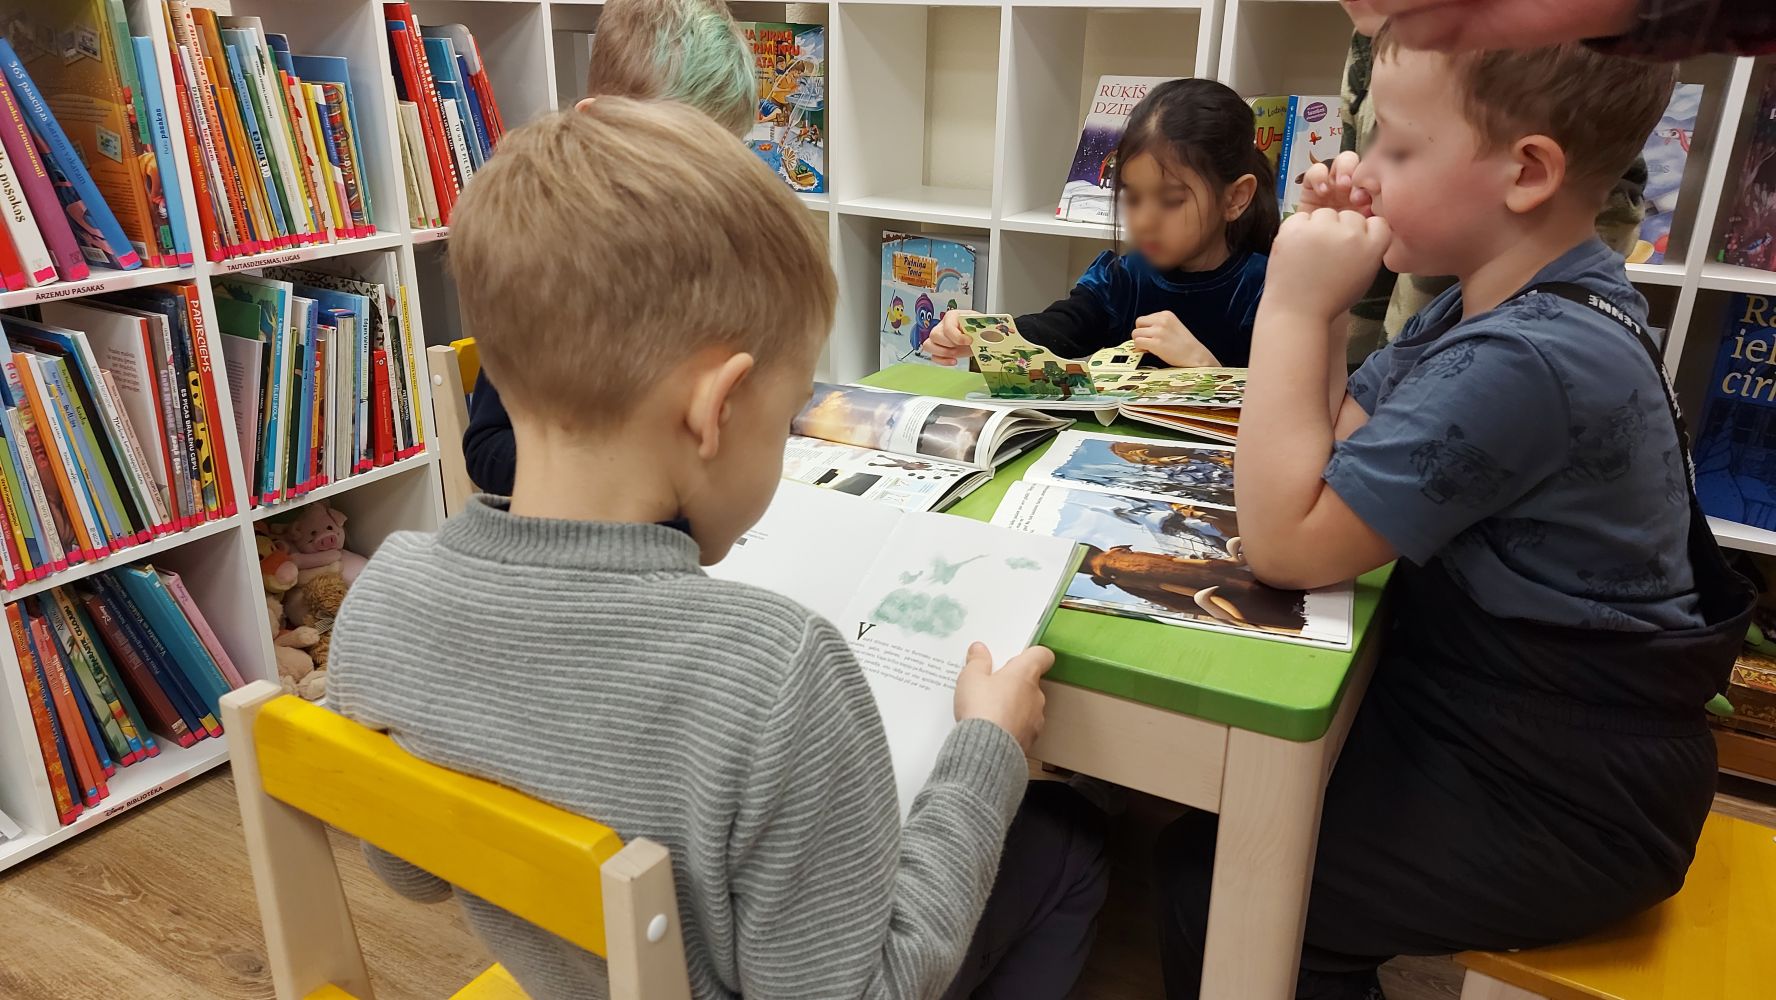 Bērni iepazīstas ar bibliotēkas krājumā esošajām grāmatām.